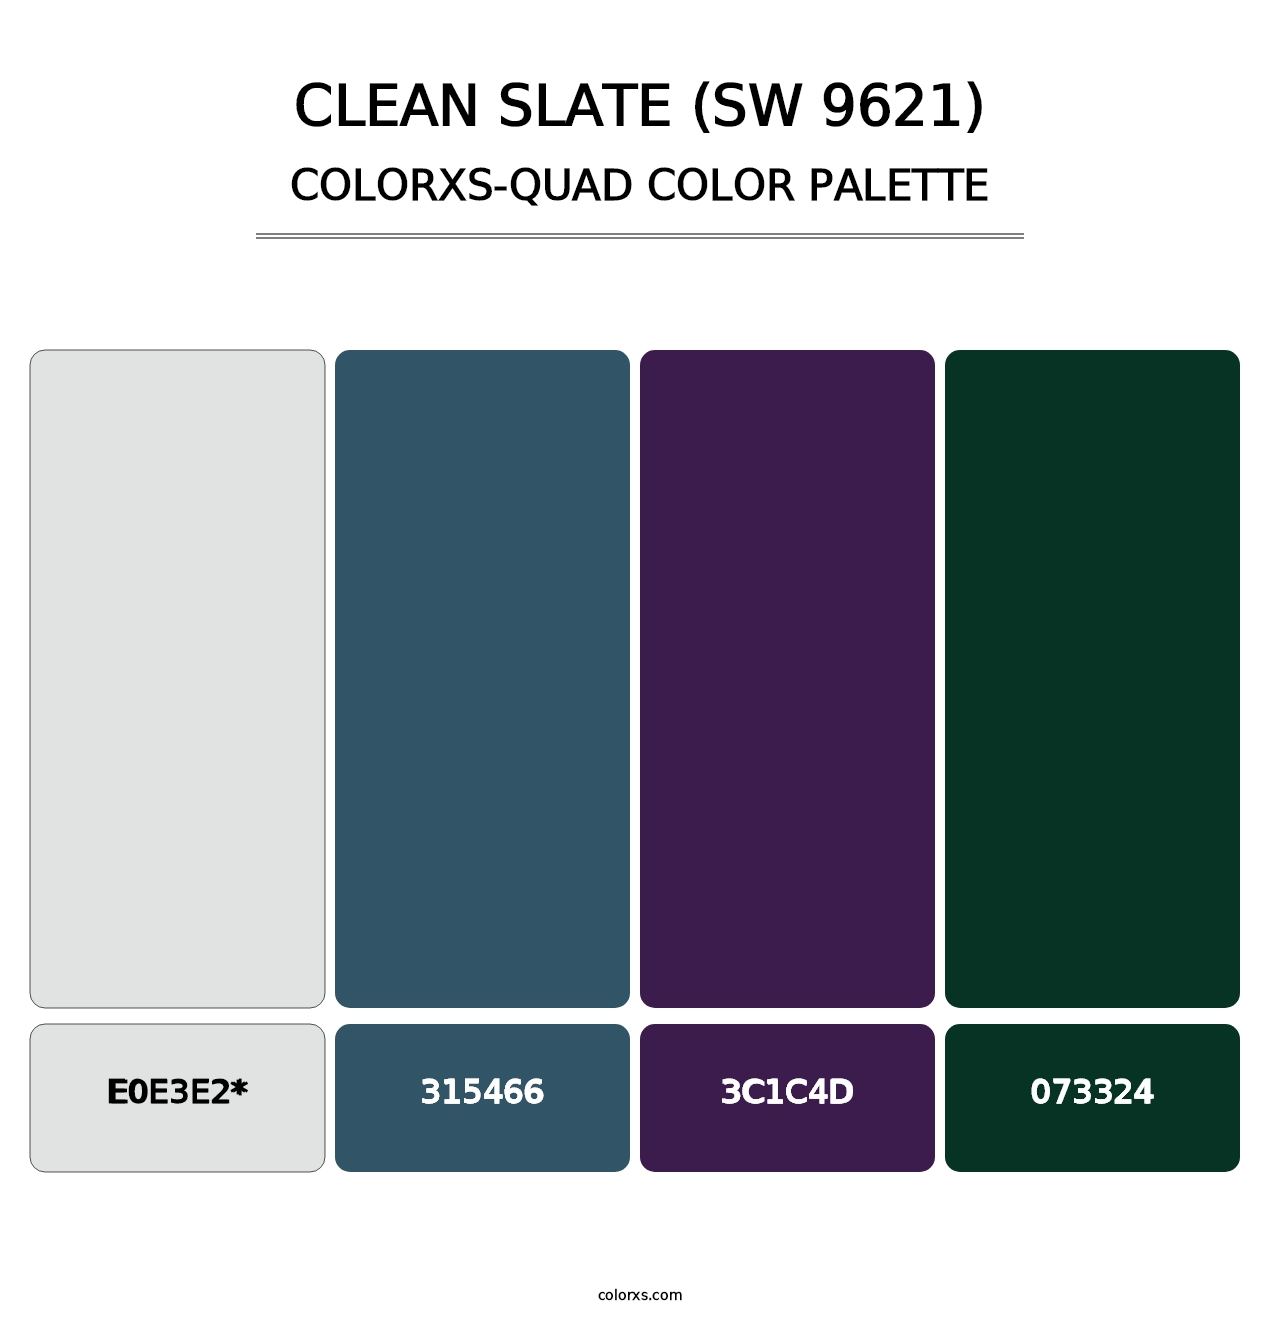 Clean Slate (SW 9621) - Colorxs Quad Palette